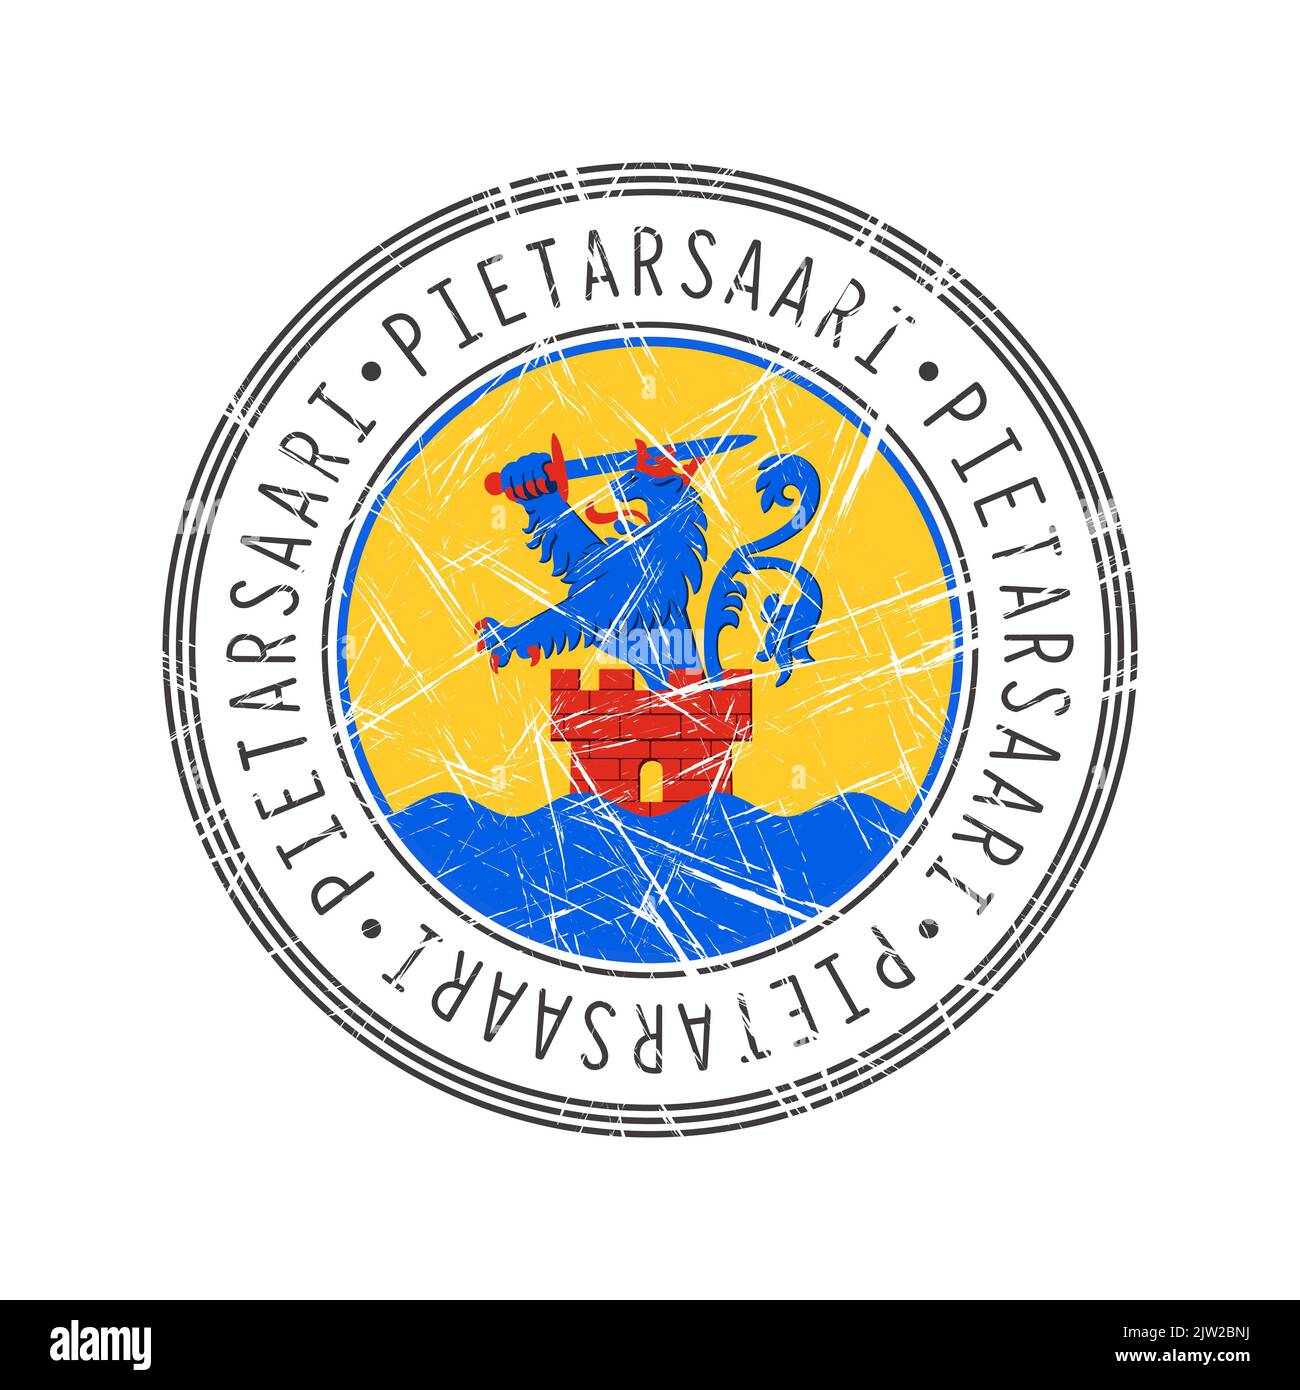 Pietarsaari, Finnland. Grunge Poststempel auf weißem Hintergrund Stockfoto